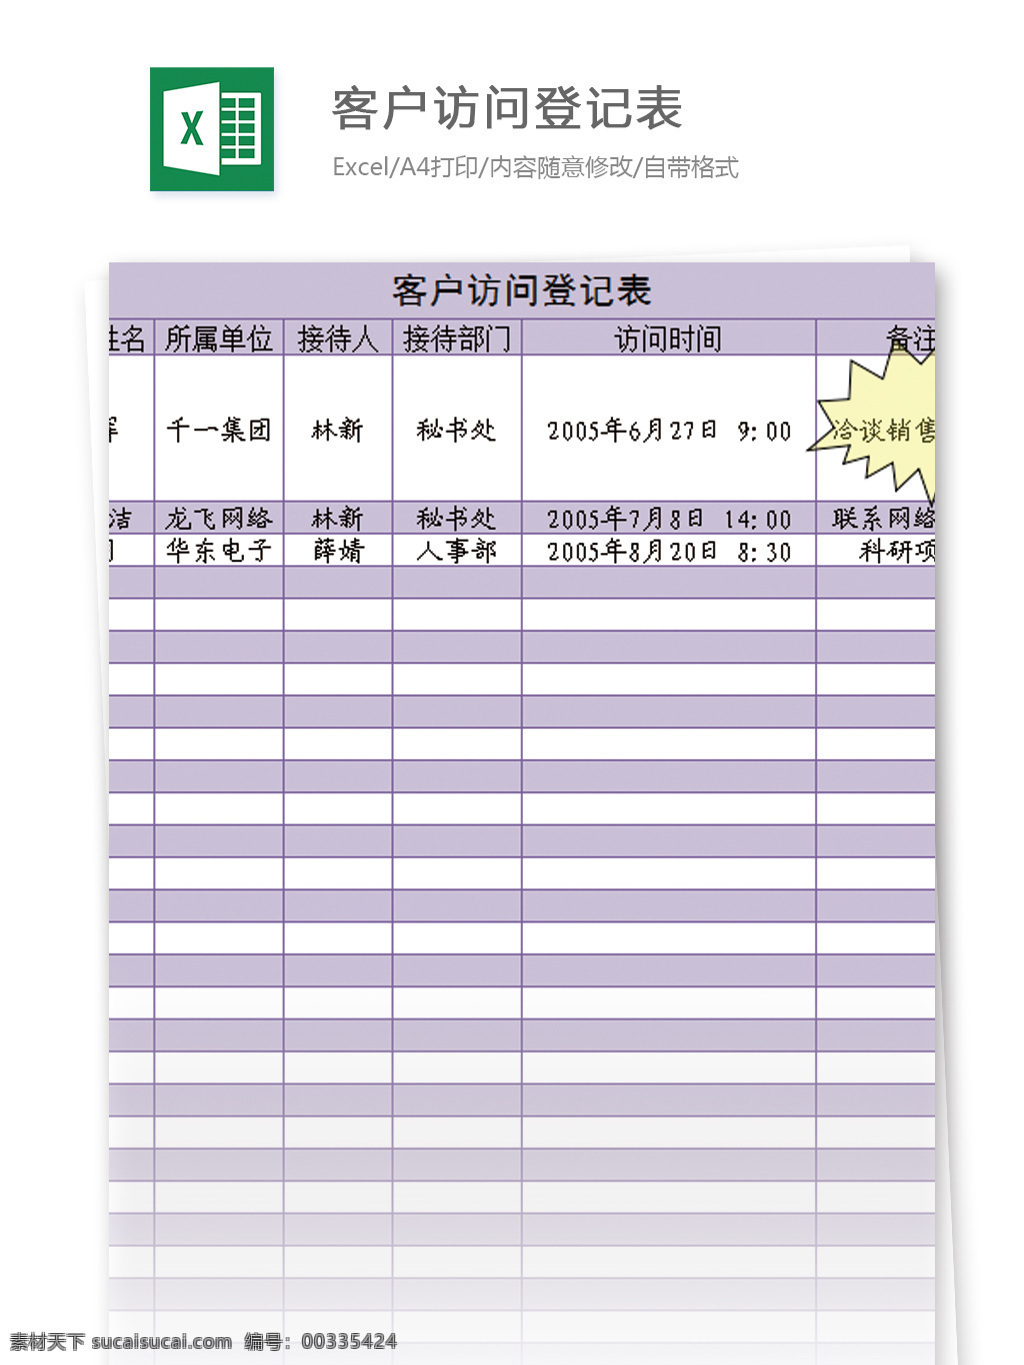 客户 访问 登记表 excel 模板 表格 表格模板 图表 表格设计